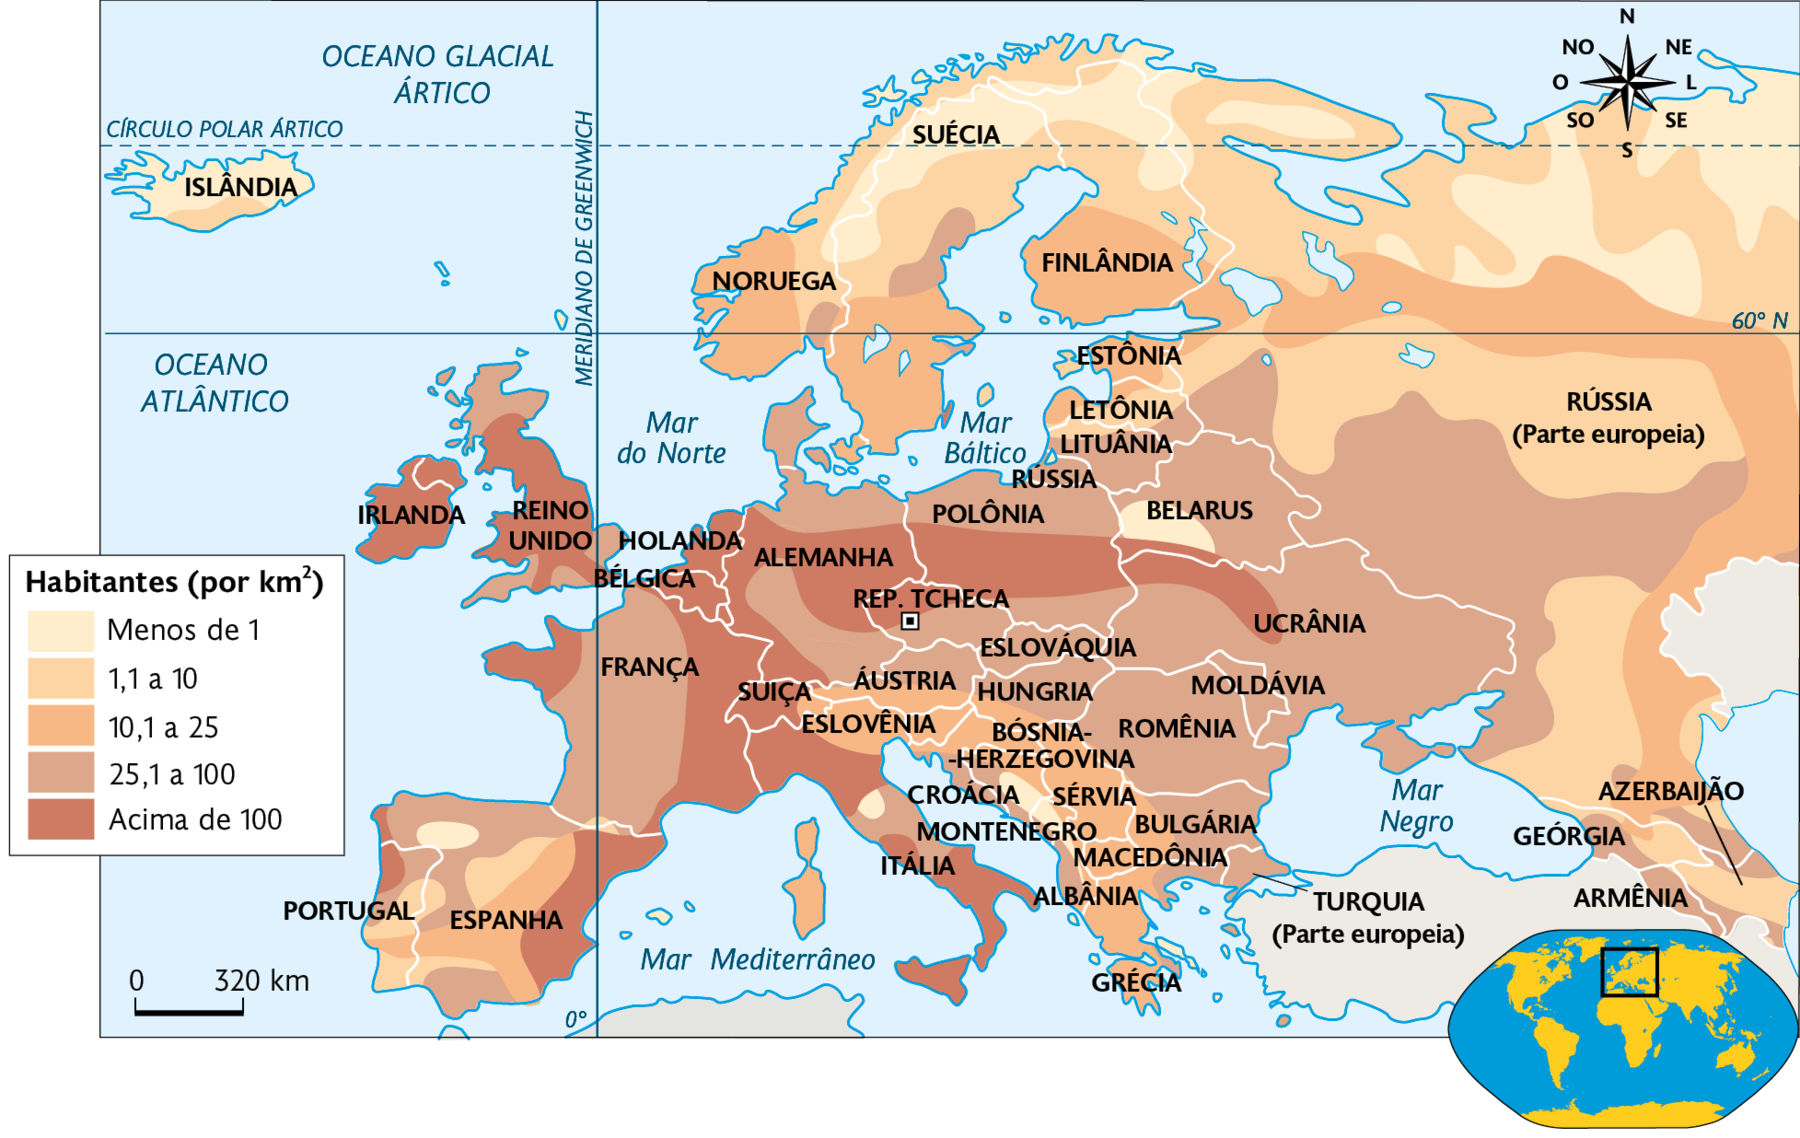 Mapa. Densidade demográfica da Europa (2015). 
Habitantes (por quilômetros quadrados). 
Menos de 1 e de 1,1 a 10: norte da Rússia (Parte europeia), Finlândia, Suécia e Noruega, sul de Belarus, sul da Bósnia-Herzegovina e Sérvia, centro da Itália e norte da Espanha. 
10,1 a 25: faixa norte da Rússia (parte europeia), sul da Finlândia, oeste da Noruega e sul da Suécia, sul da Áustria, leste da Suíça, norte da Eslovênia, sul da Hungria, norte da Bósnia-Herzegovina, Sérvia, norte de Montenegro, Macedônia, oeste da Bulgária e Albânia, Grécia, centro e sul da Espanha. 
25,1 a 100: noroeste da Espanha, oeste da França, norte e centro da Alemanha, norte e sul da Polônia, sul da República Tcheca, norte da Áustria, Eslováquia, norte da Hungria, sudoeste da Rússia, Ucrânia, Moldávia e Romênia, centro e leste da Bulgária, leste da Macedônia e Turquia (parte europeia). 
Acima de 100: Irlanda, Reino Unido, oeste e leste da França, Bélgica e Holanda, oeste da Suíça, norte e sul da Itália, norte e oeste da Alemanha, centro da Polônia, norte da República Tcheca, sul de Belarus e noroeste da Ucrânia. No canto inferior direito, mapa de localização, planisfério destacando a região descrita. No canto superior direito, a rosa dos ventos e no canto inferior esquerdo, a escala: 320 quilômetros por centímetro.